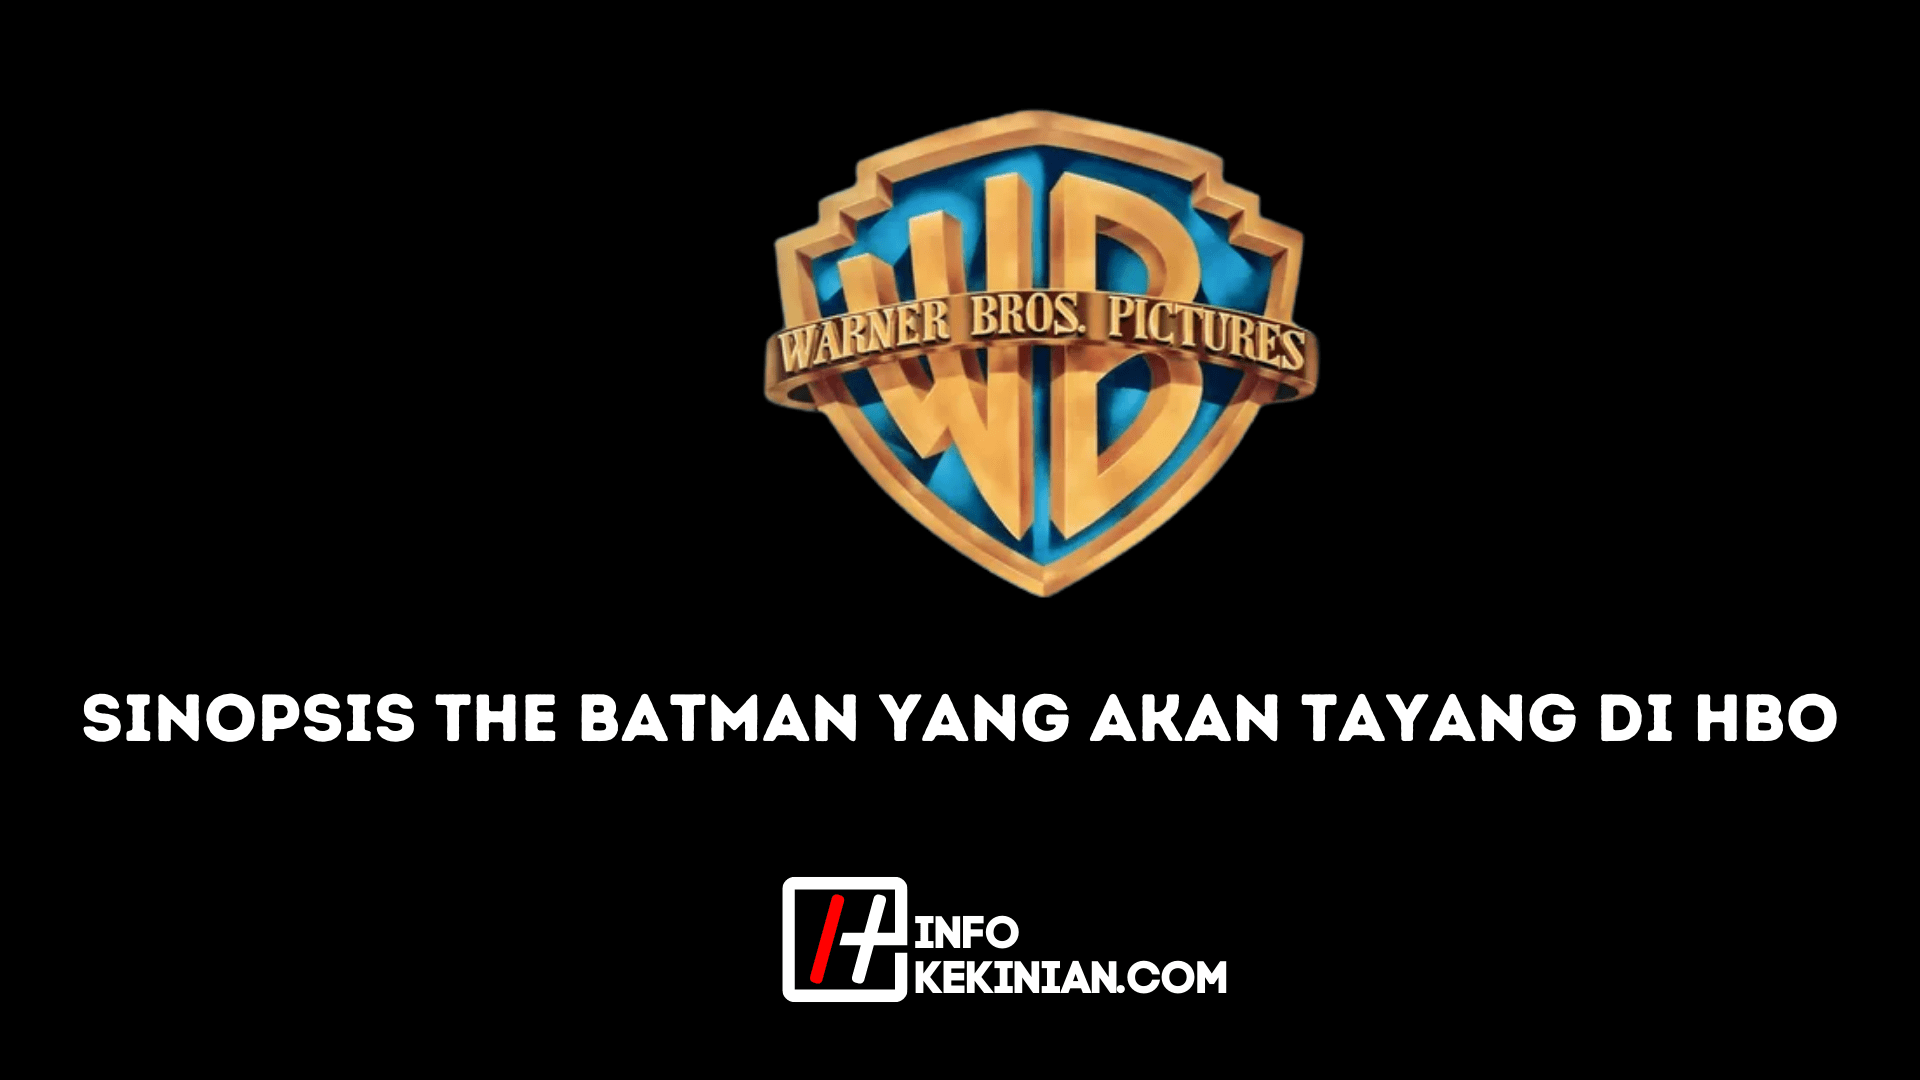 Sinopsis The Batman yang Akan Tayang di HBO